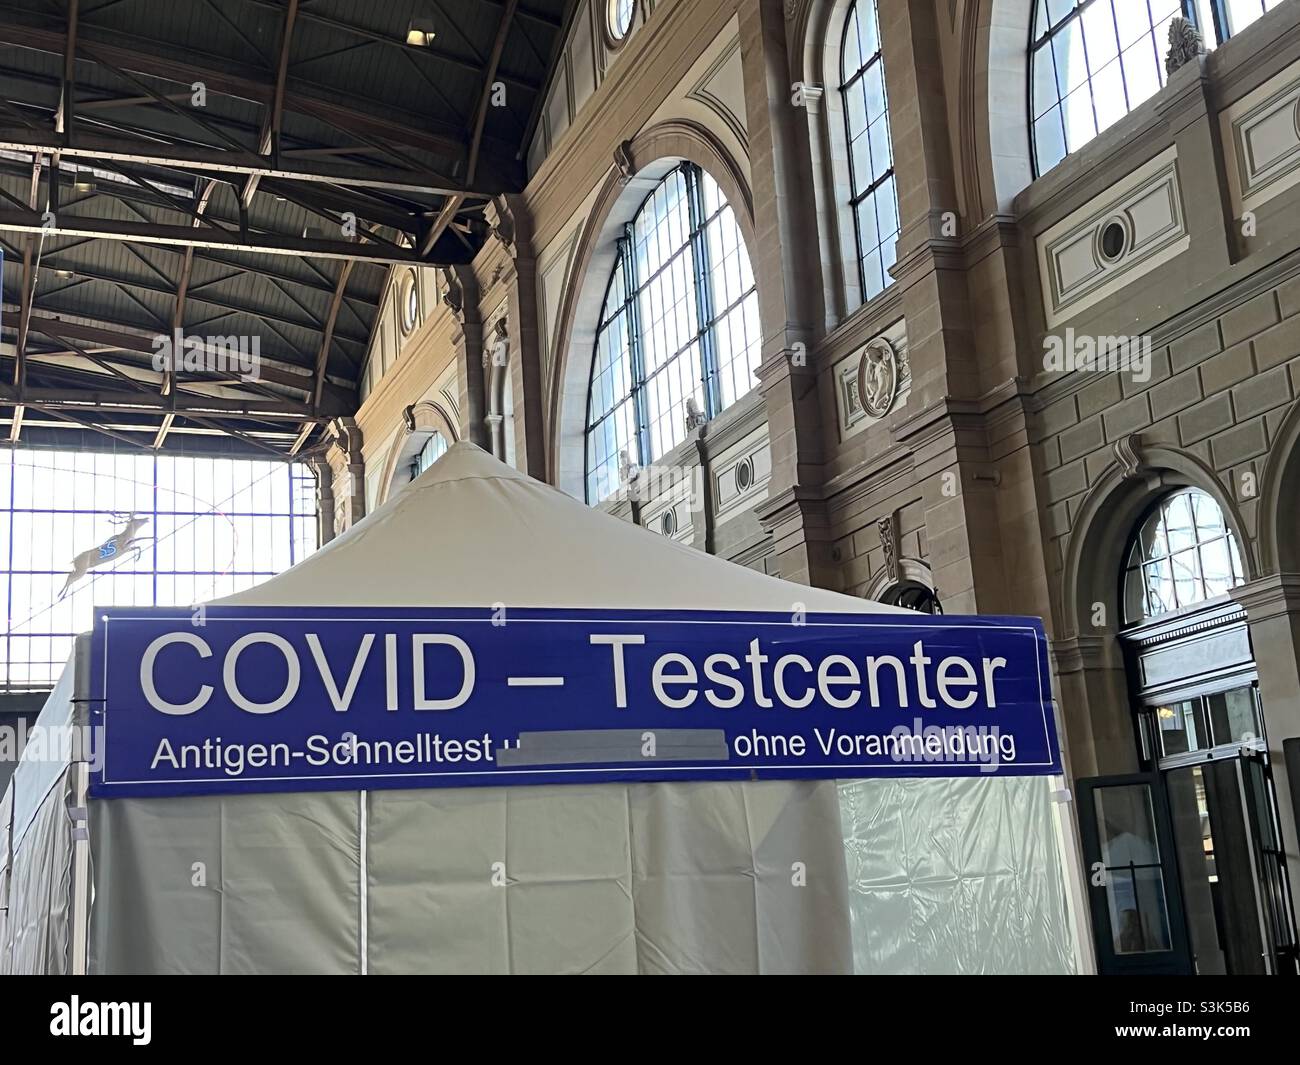 Zurich, Suisse 10 23 2021 Covid test Center sur la gare principale de Zurich.L'inscription en allemand indique qu'aucun rendez-vous n'est nécessaire pour le test d'antigène de vitesse.Détail d'une tente d'essai. Banque D'Images